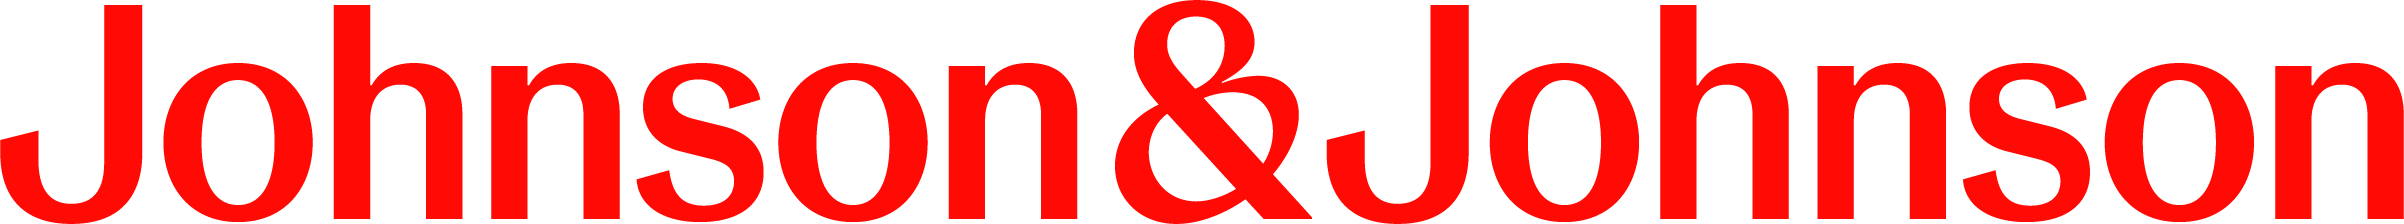 JNJ_Logo_SingleLine_Red_CMYKjpg